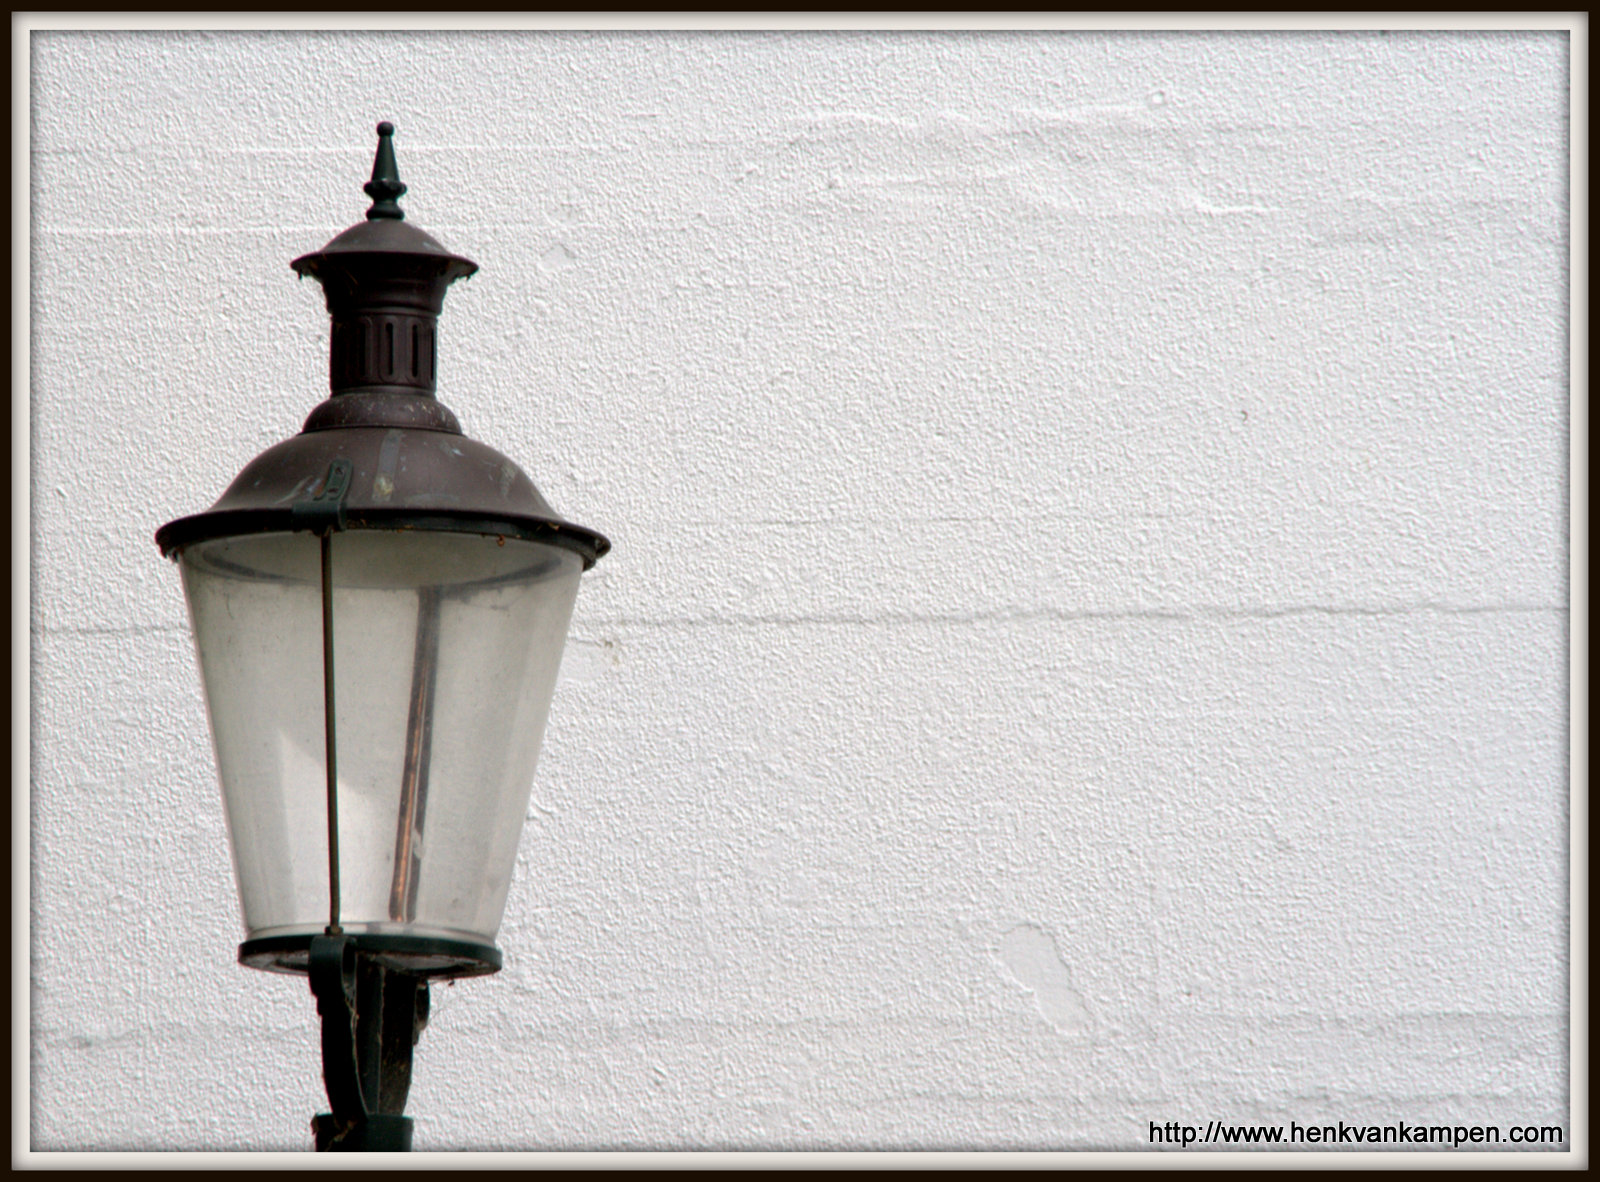 Lantern, Academieplein